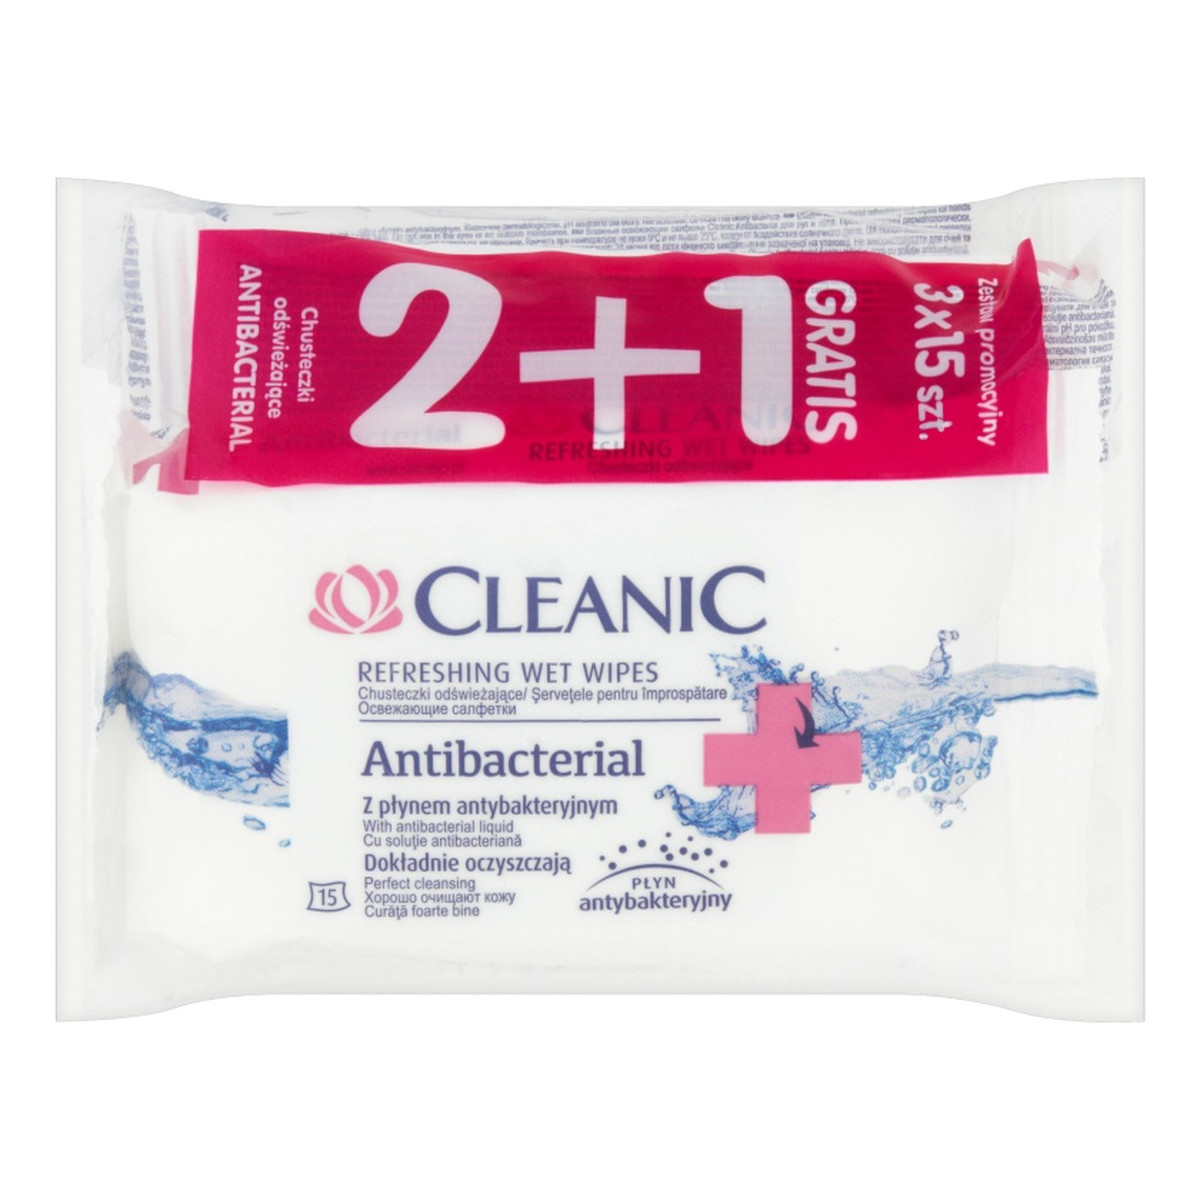 Cleanic Antibacterial Chusteczki odświeżające z płynem antybakteryjnym 3 x 15 sztuk